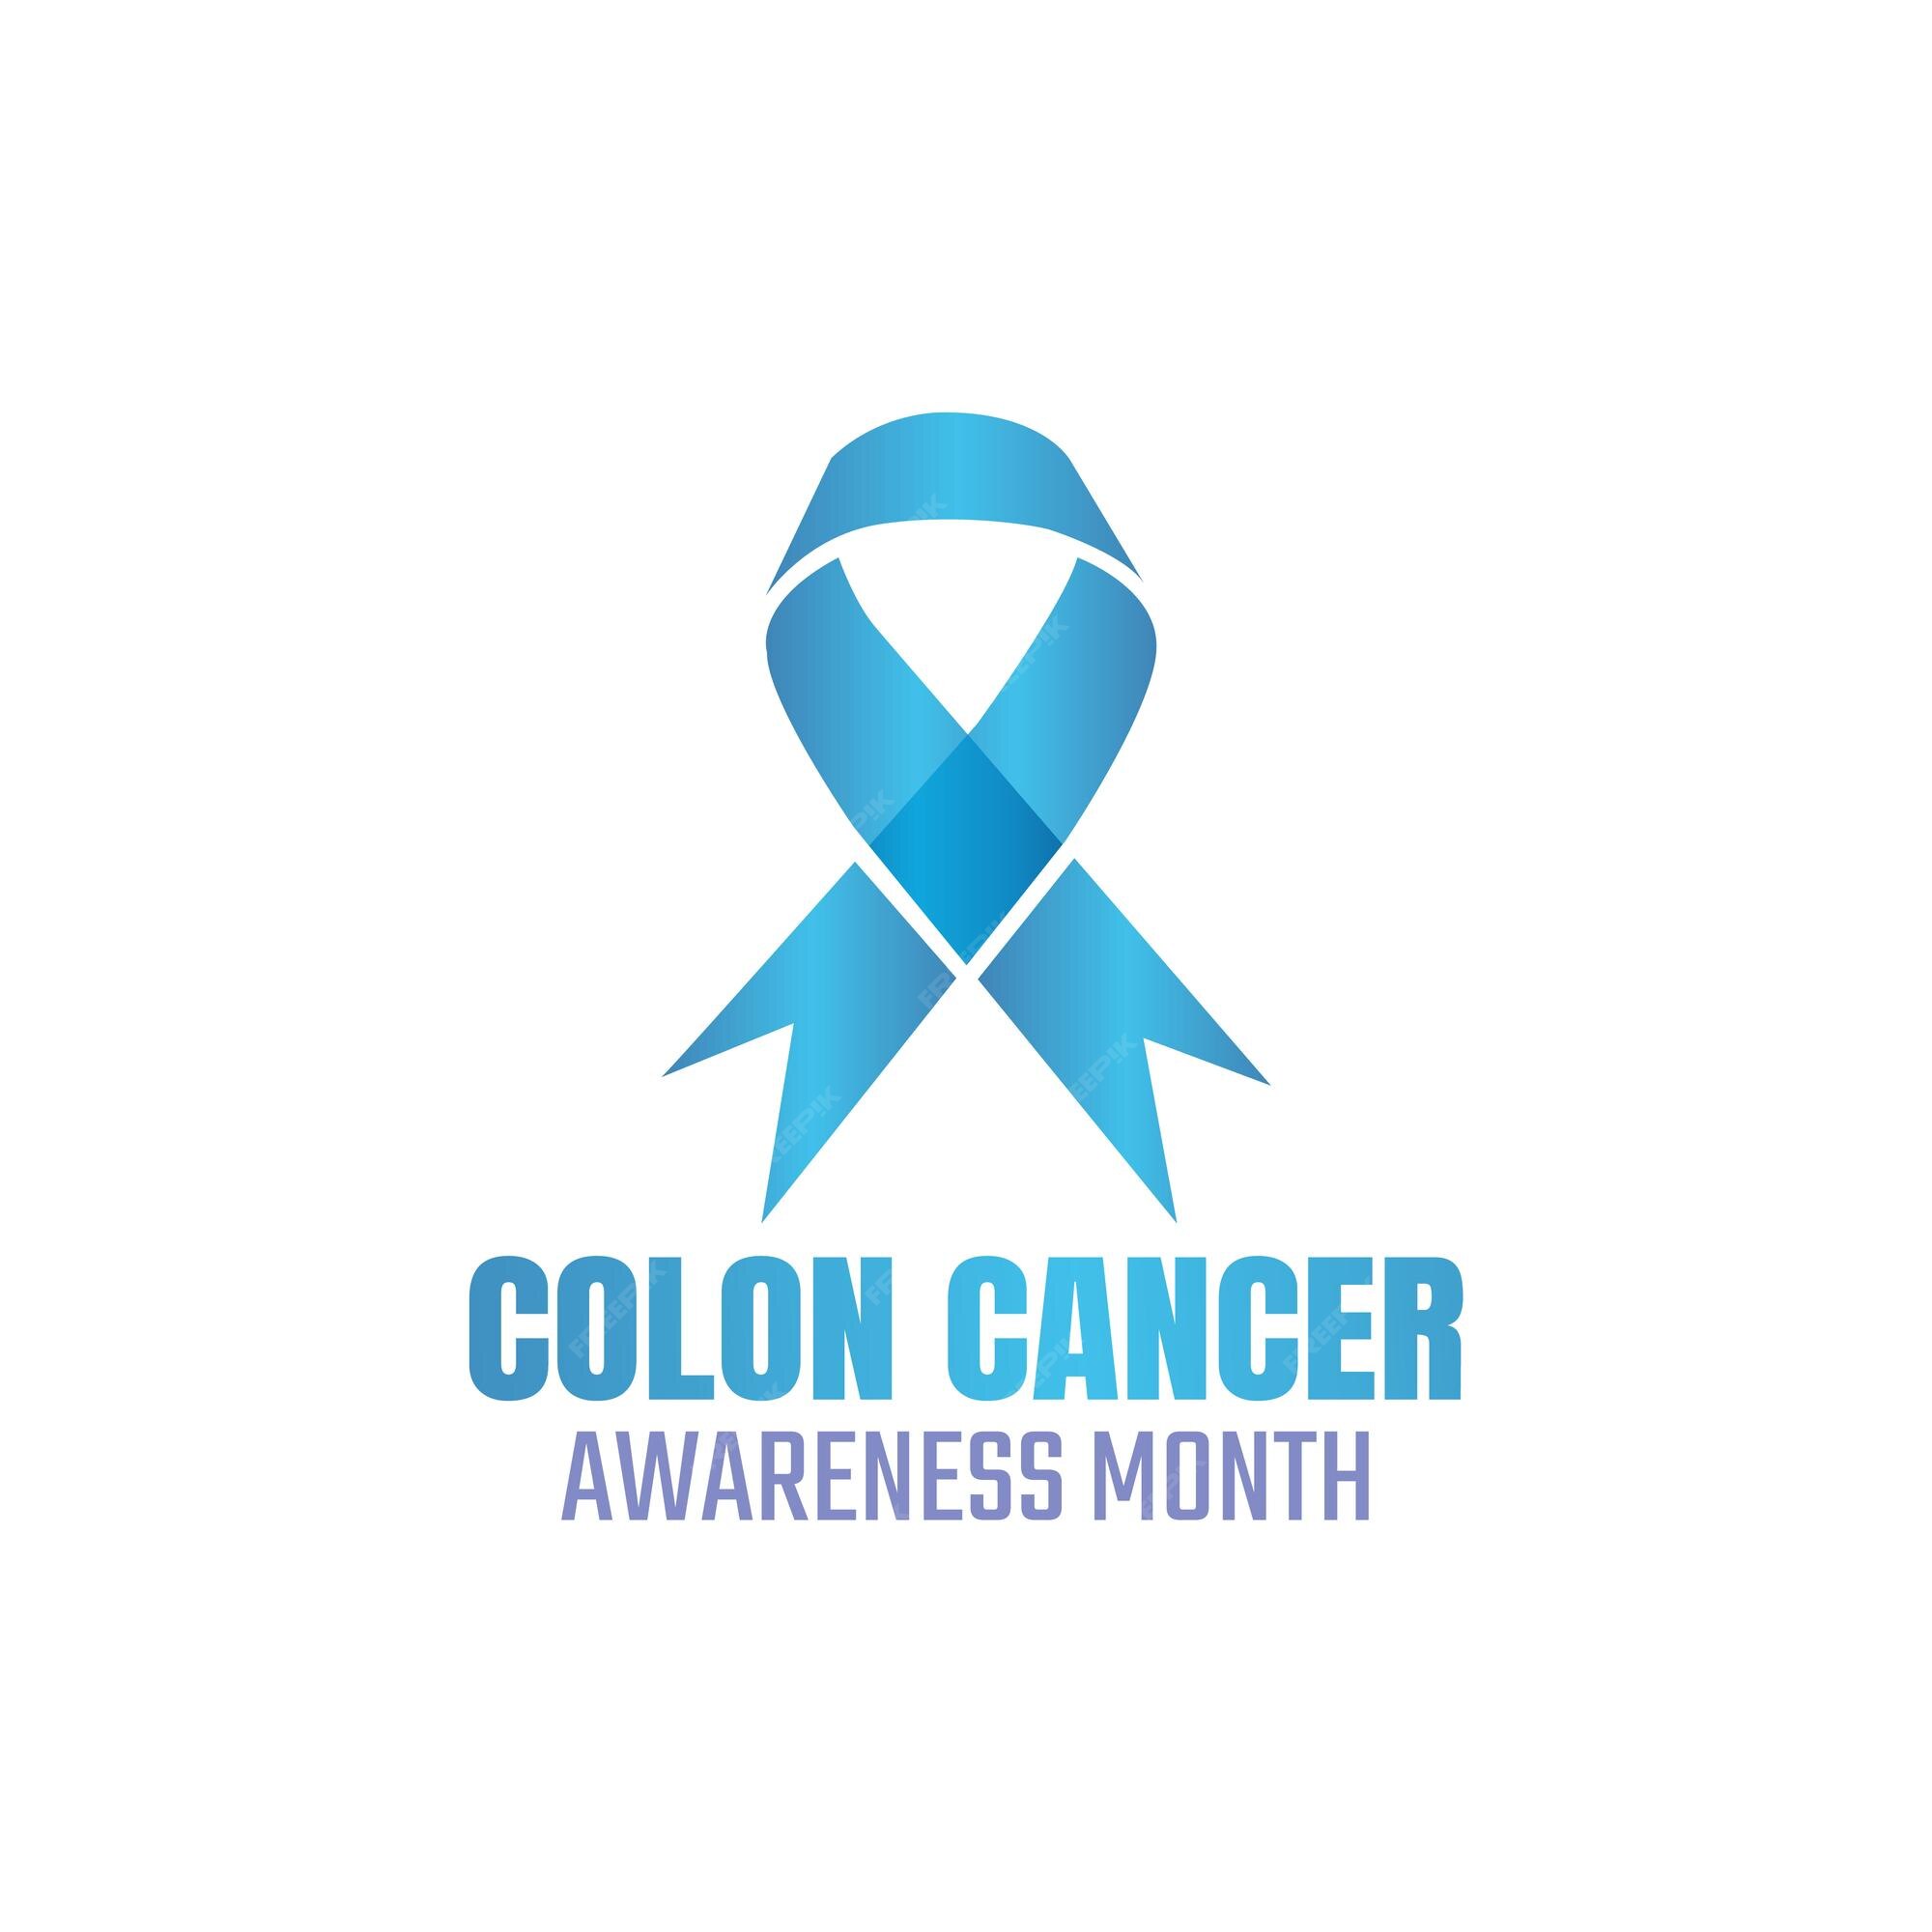 Premium Vector | Colon cancer awareness month logo vector.